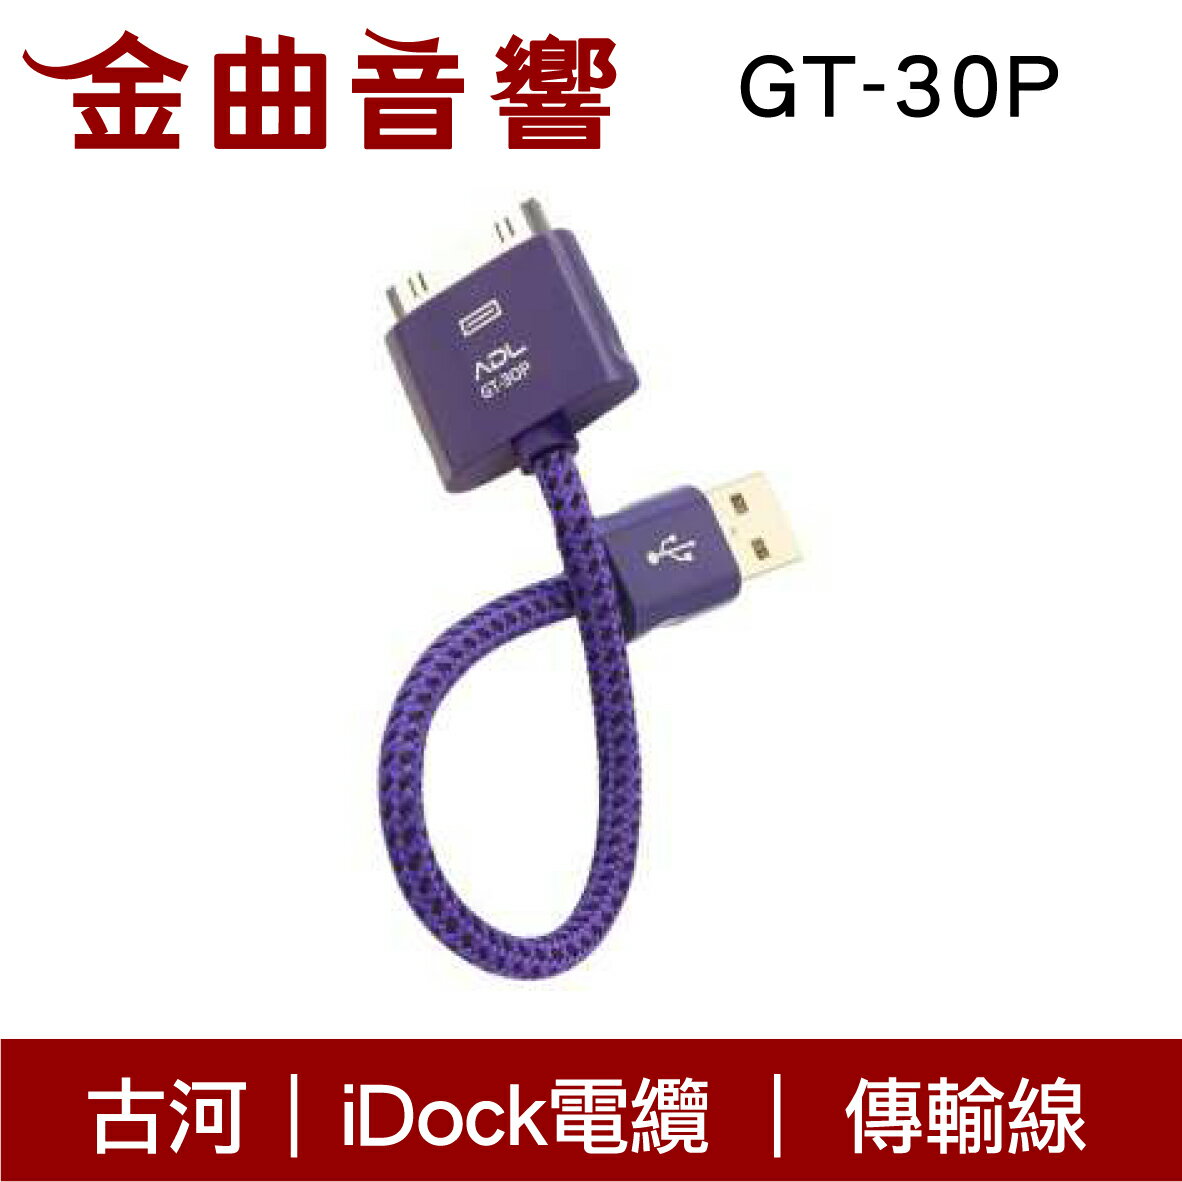 FURUTECH 古河 ADL GT-30P Apple iDock USB 傳輸線 | 金曲音響